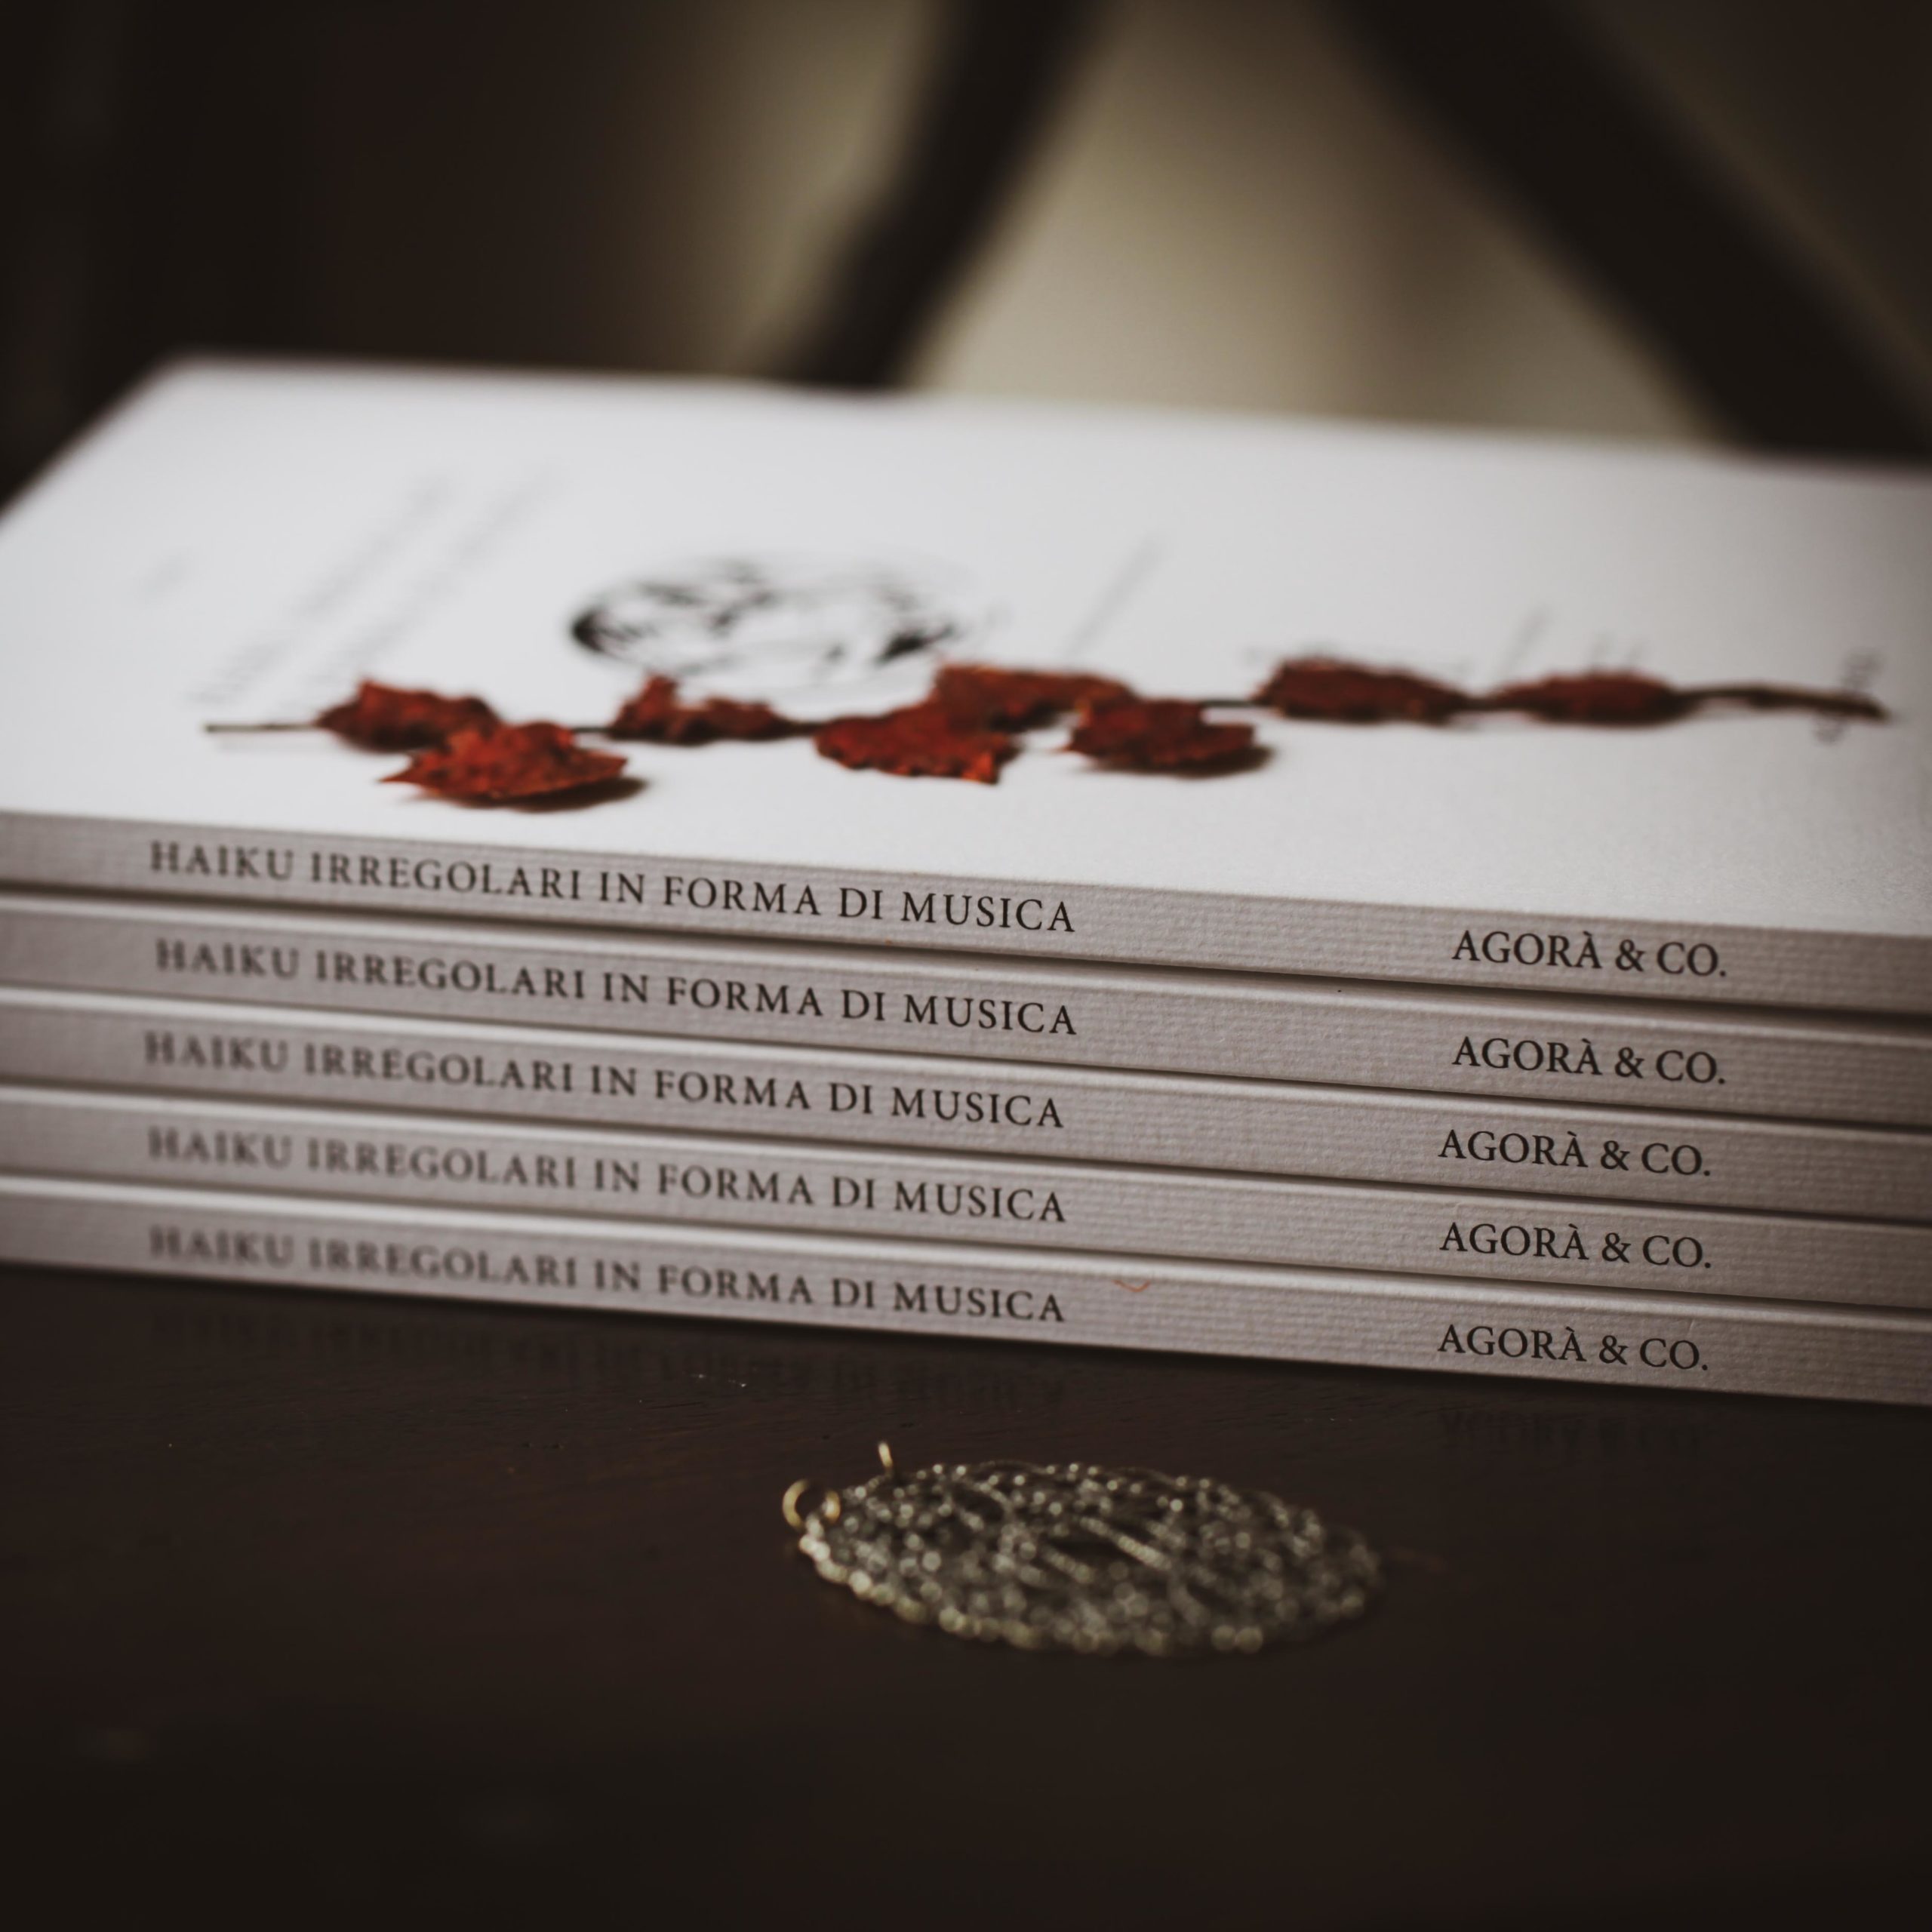 libro-haiku-irregolari-in-forma-di-musica-agora-edizioni-lugano-autore-aima-illustrazioni-diego-cinquegrana-fotografia-aima-lichtblau-angelo-tonelli-gabriella-cinti-2